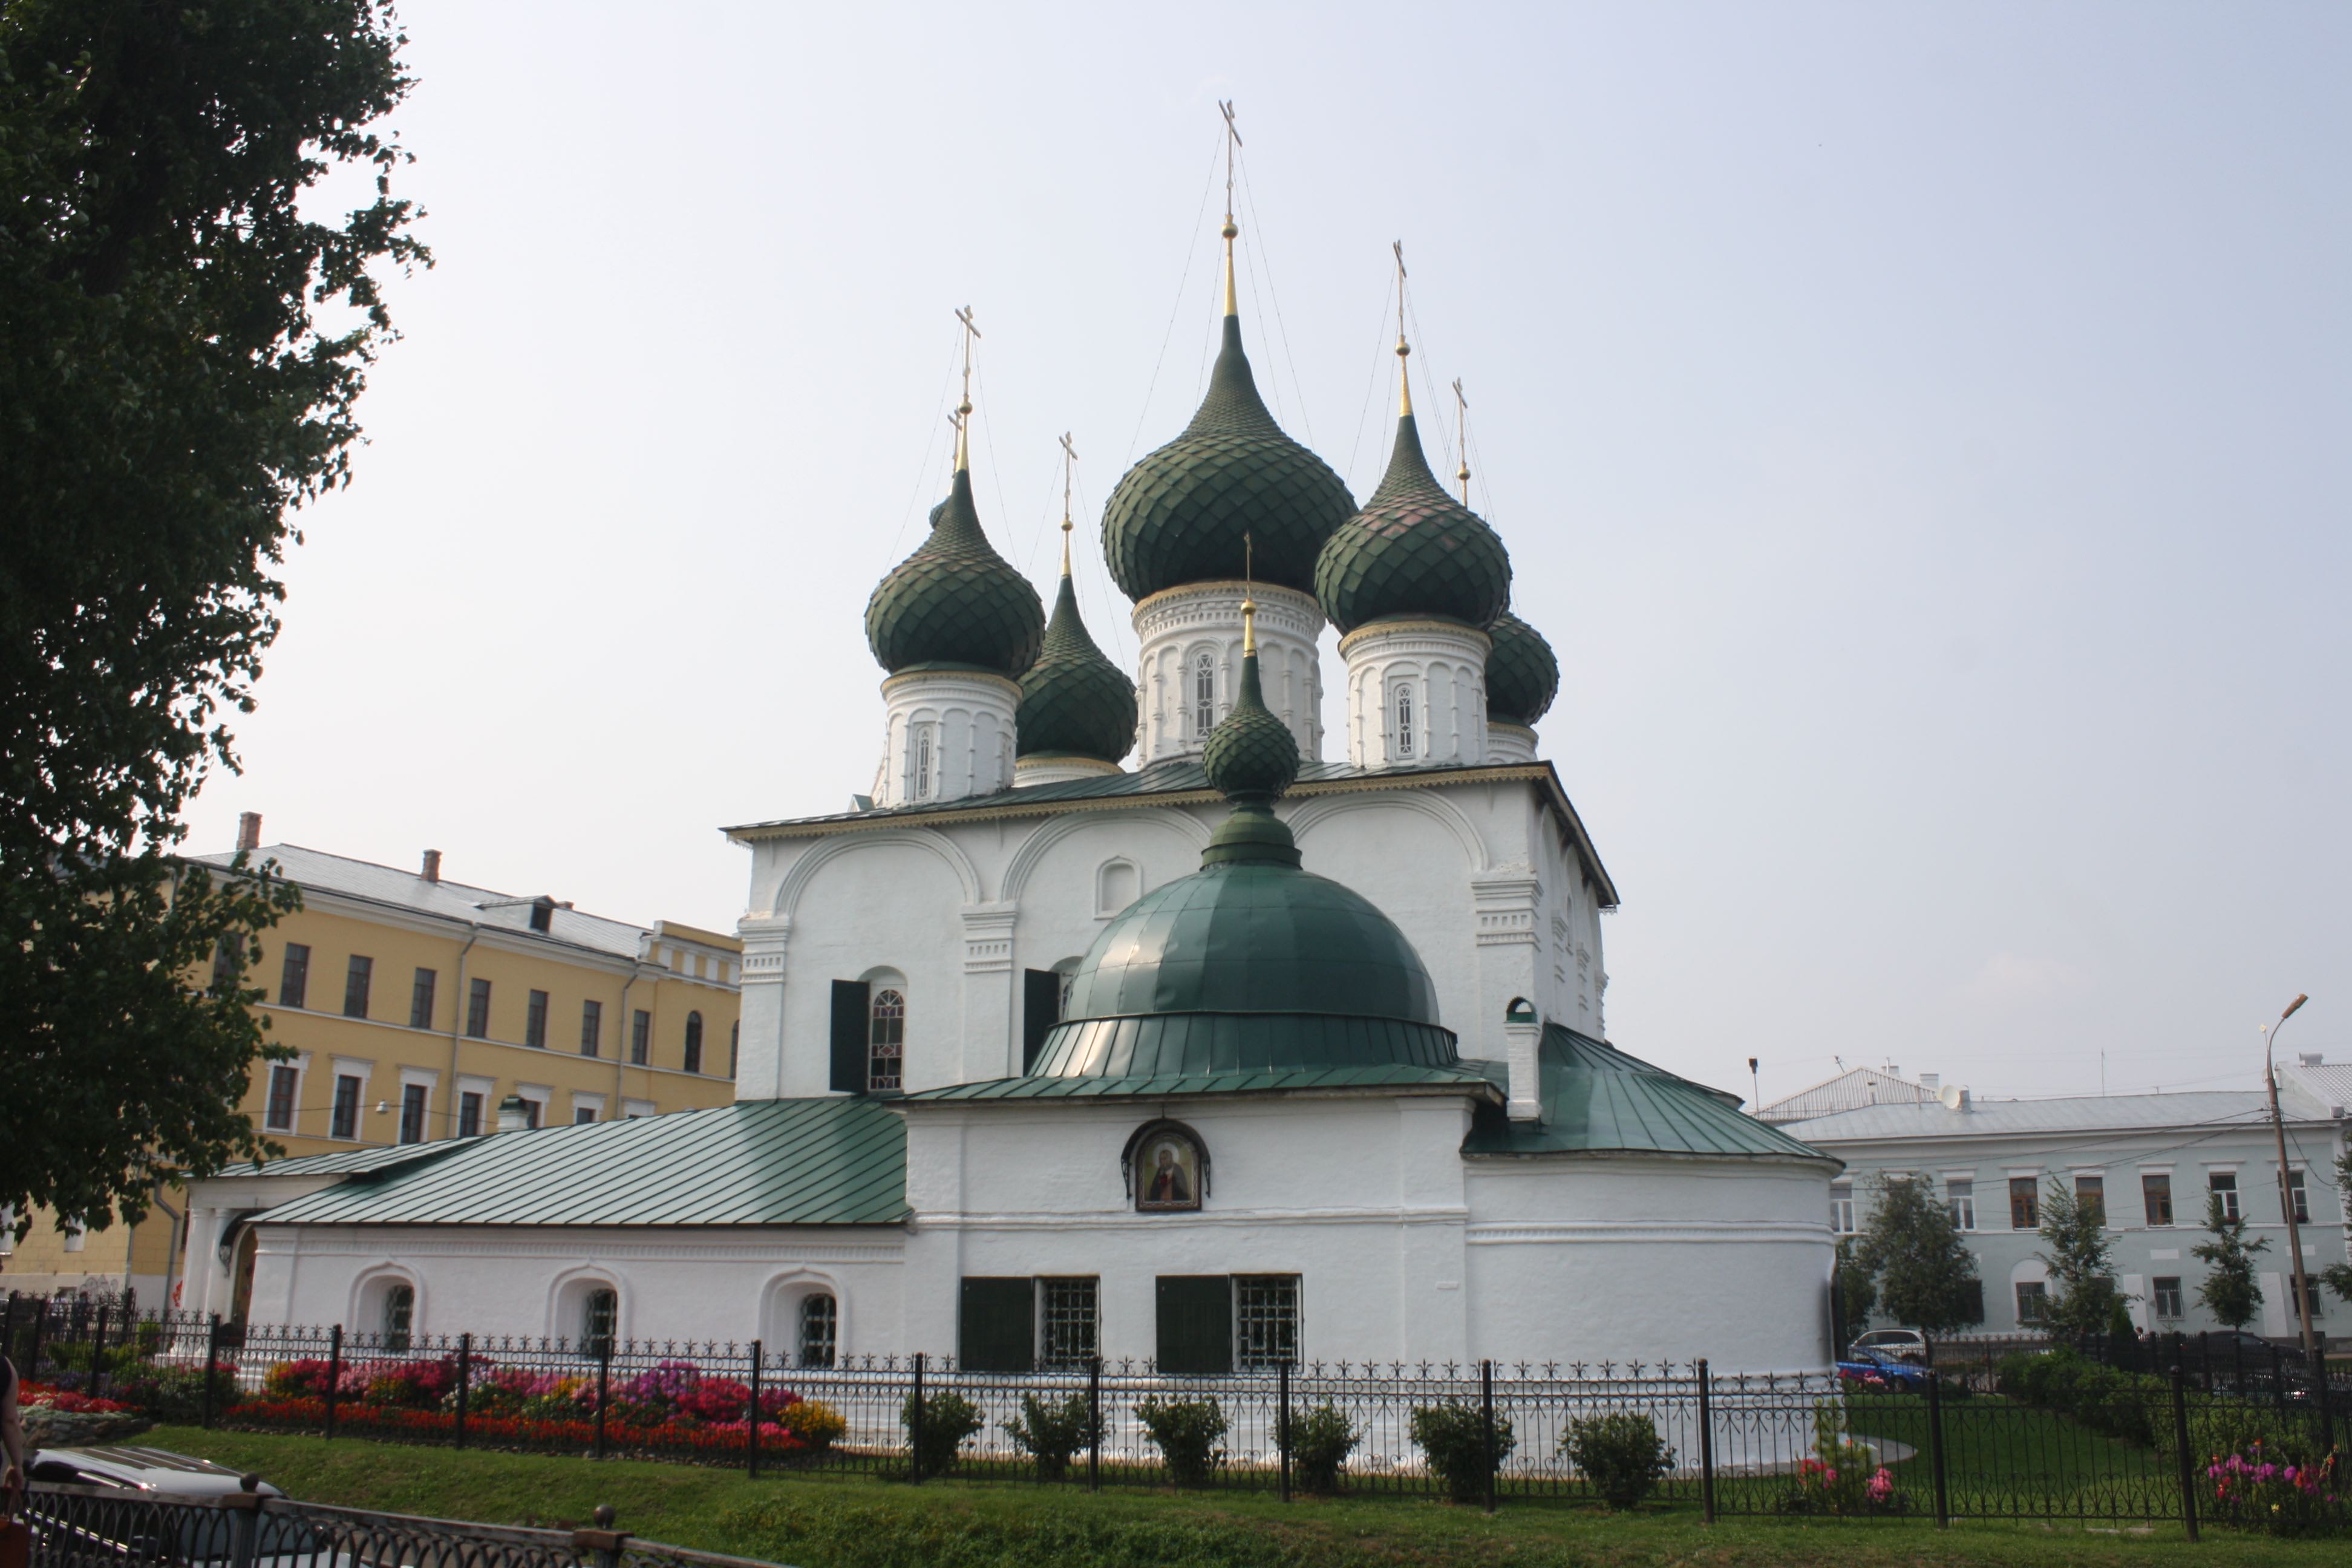 Molte chiese locali sono sormontate da cupole verdi. L’architettura è stata ben conservata nei secoli e ha fatto da sfondo a diversi film 